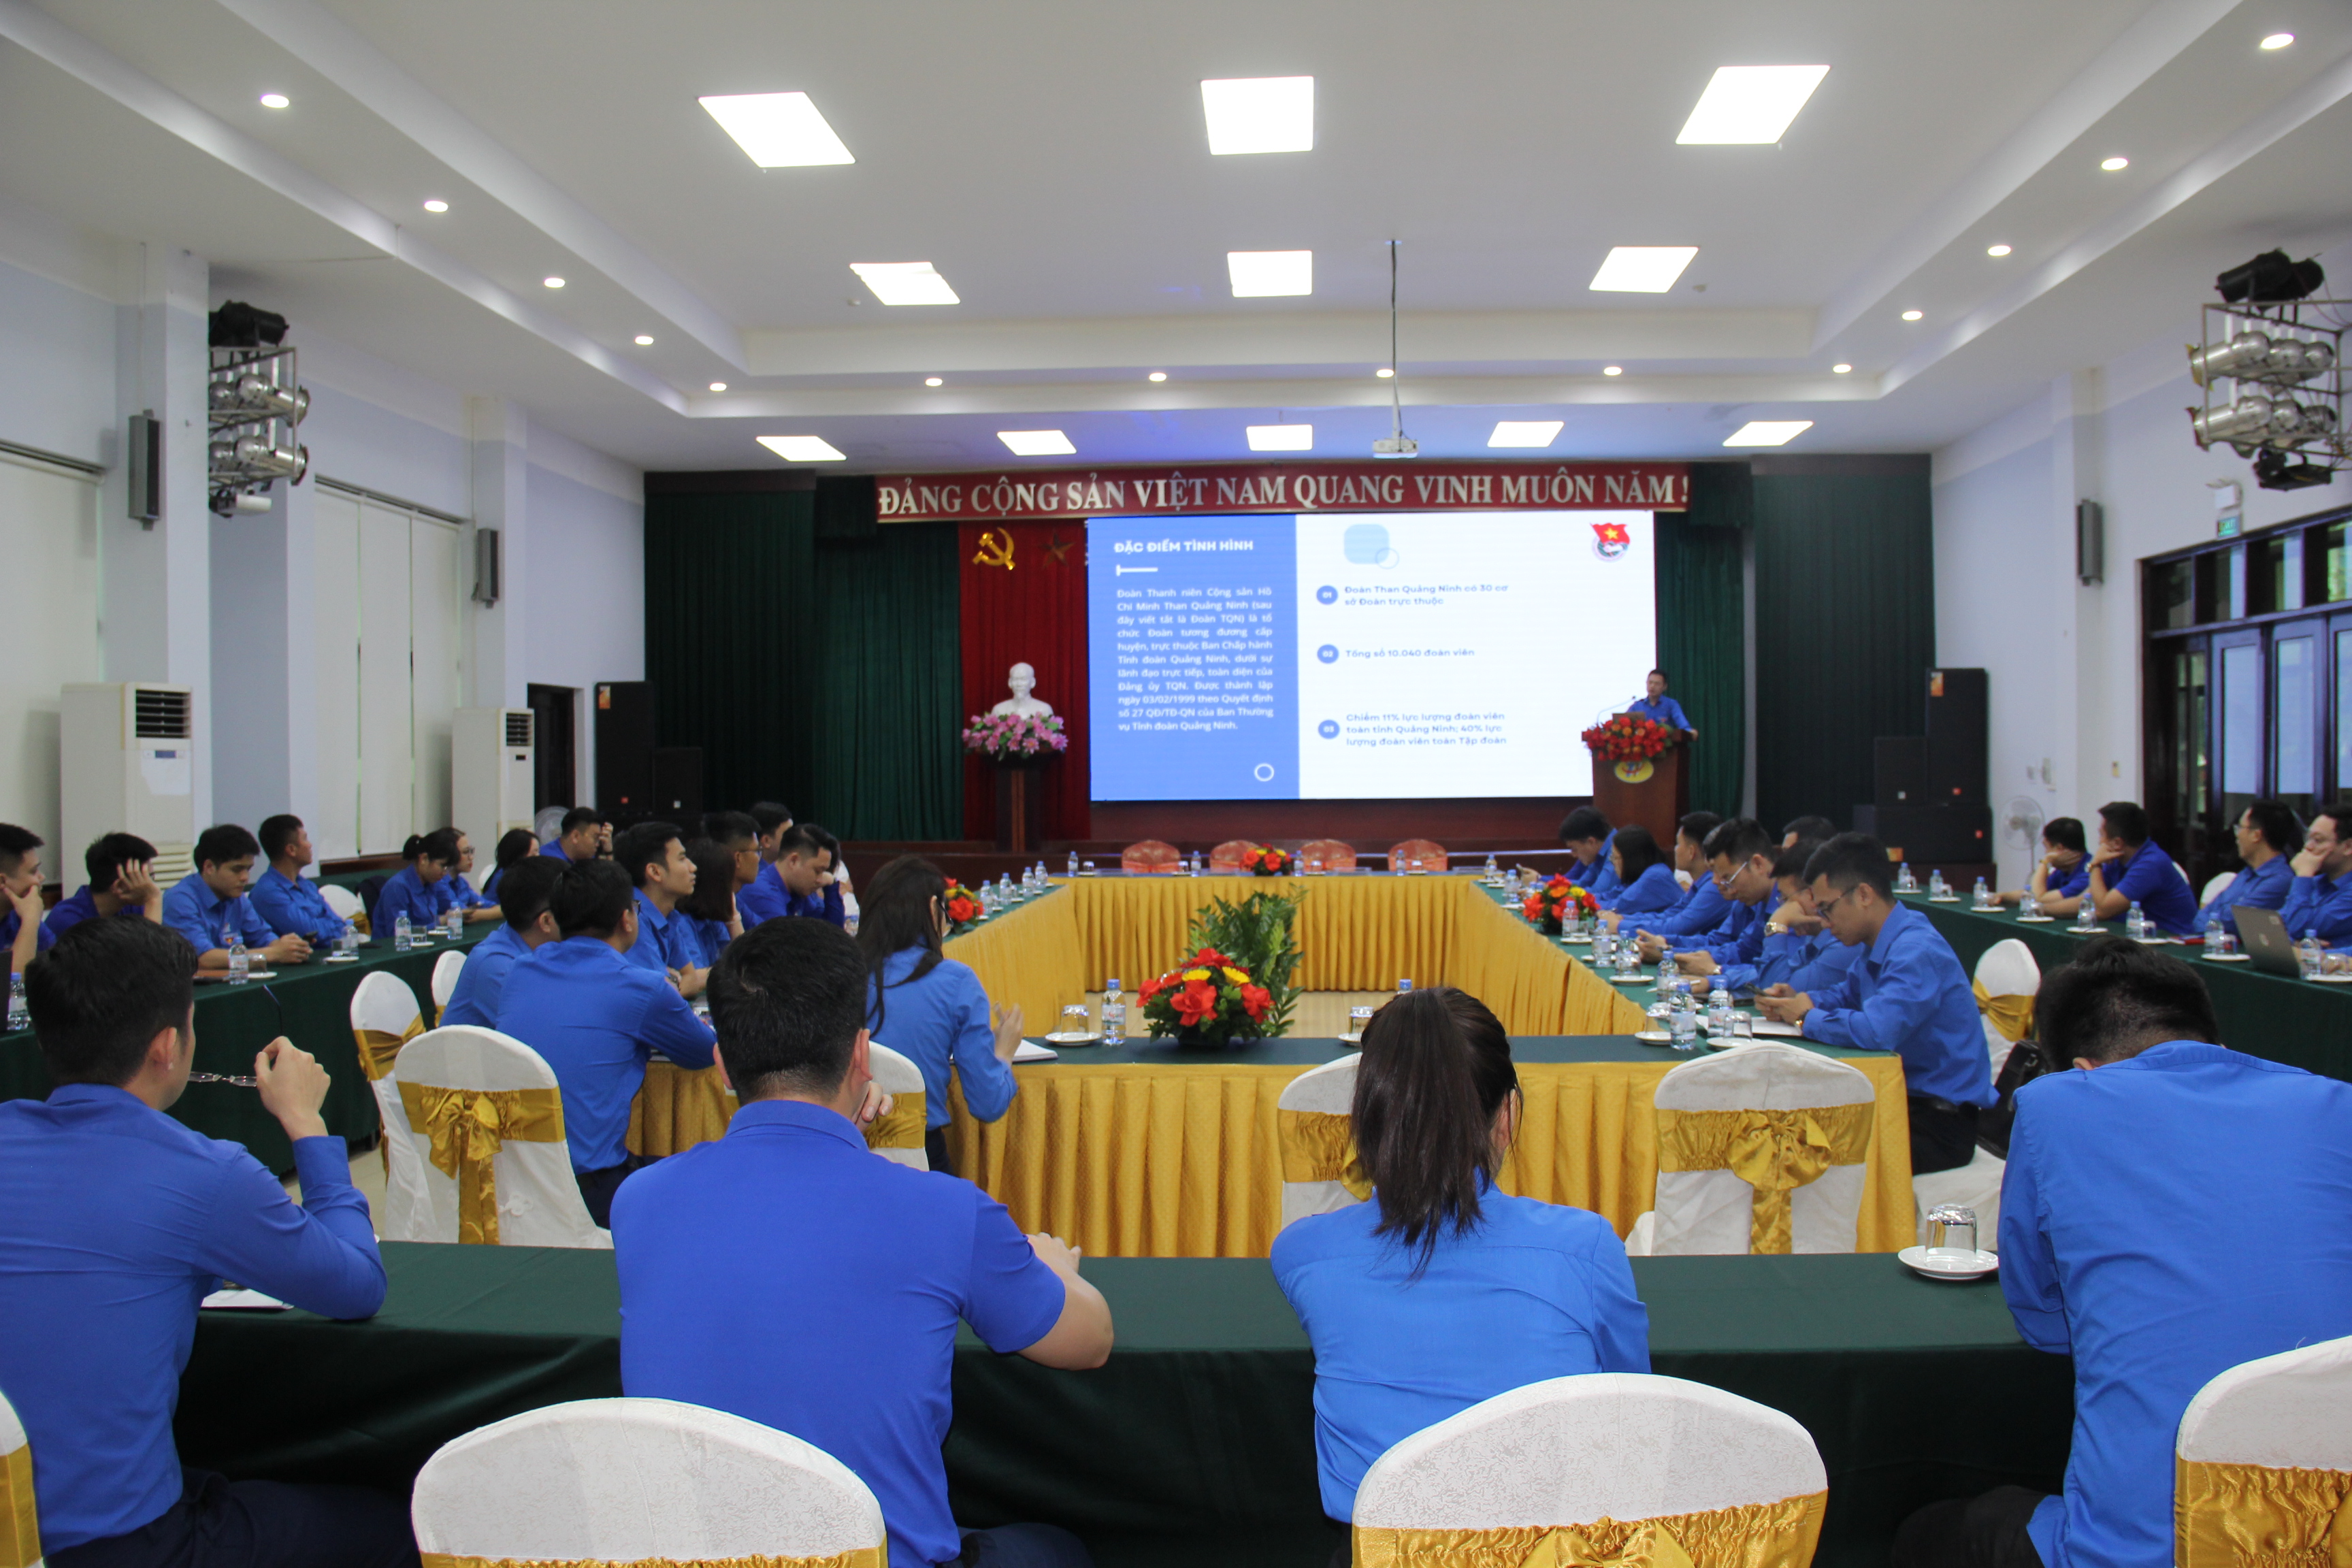 Đoàn Than Quảng Ninh khen thưởng 20 tập thể, cá nhân có thành tích trong Tháng Thanh niên năm 2024